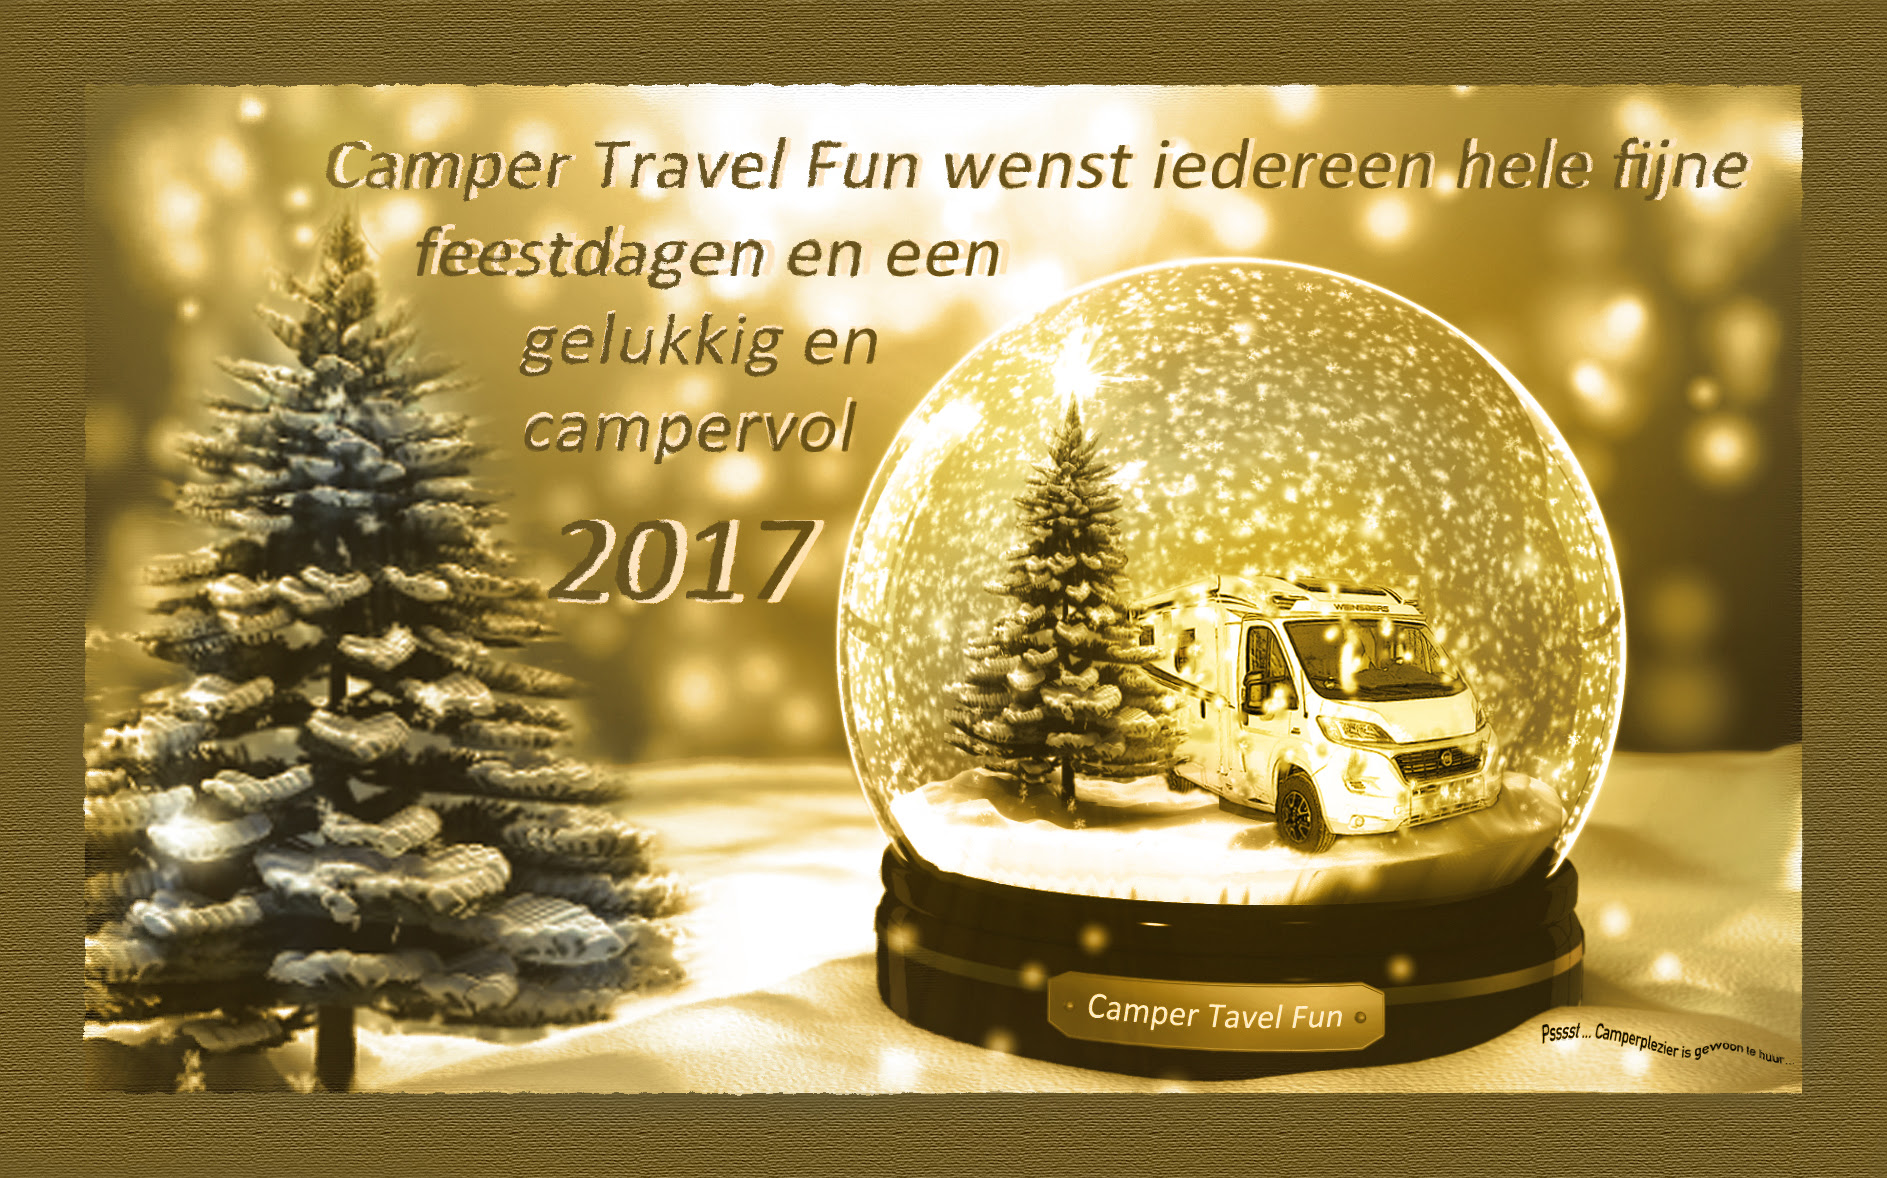 Fijne feestdagen en een gelukkig 2017 !!! - camper travel fun